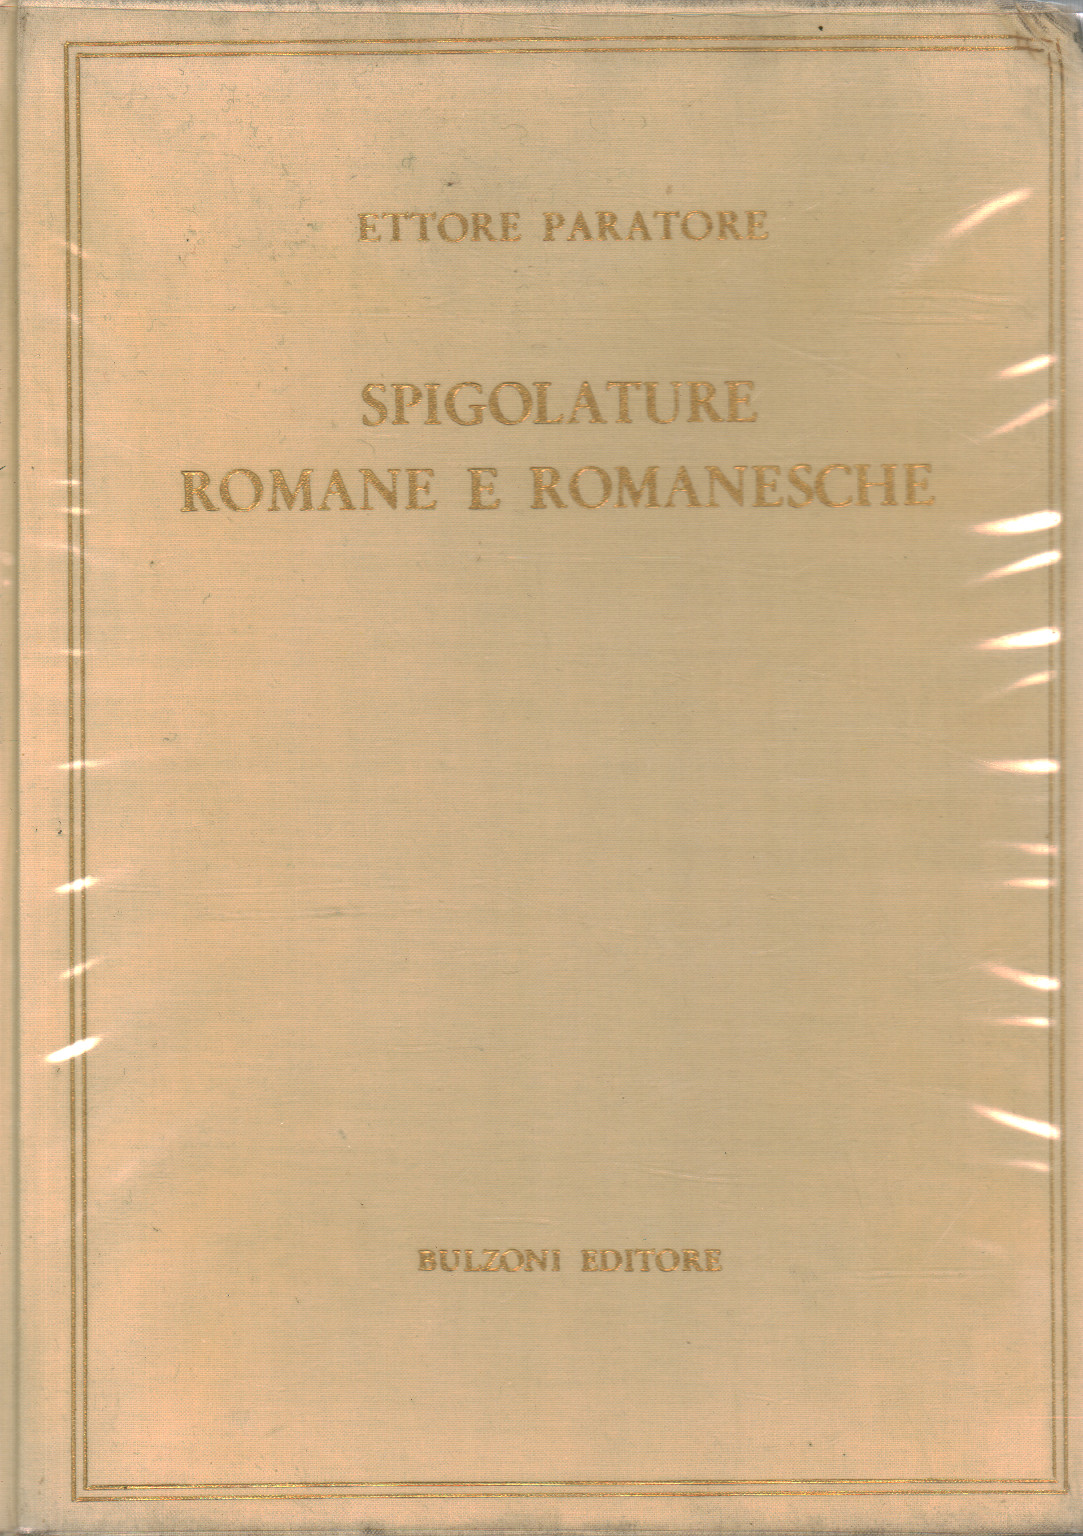 Spigolature romane e romanesche, s.a.